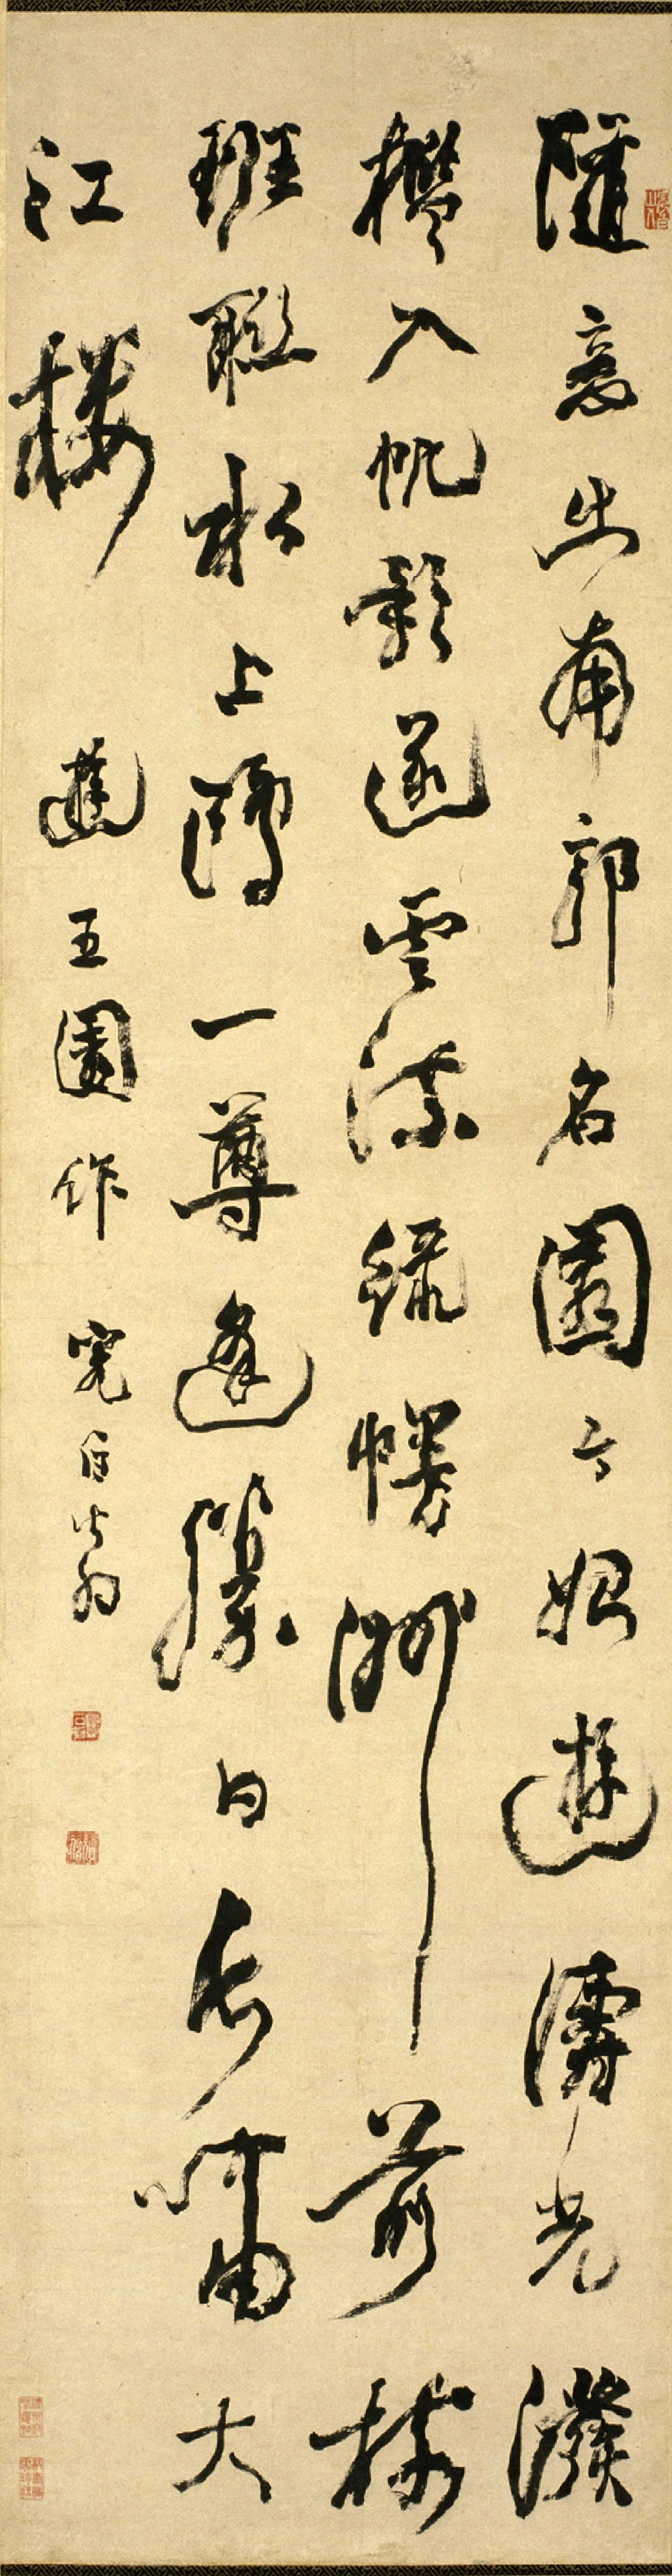 邓石如行书《游五园诗》轴-北京故宫博物院藏(图1)